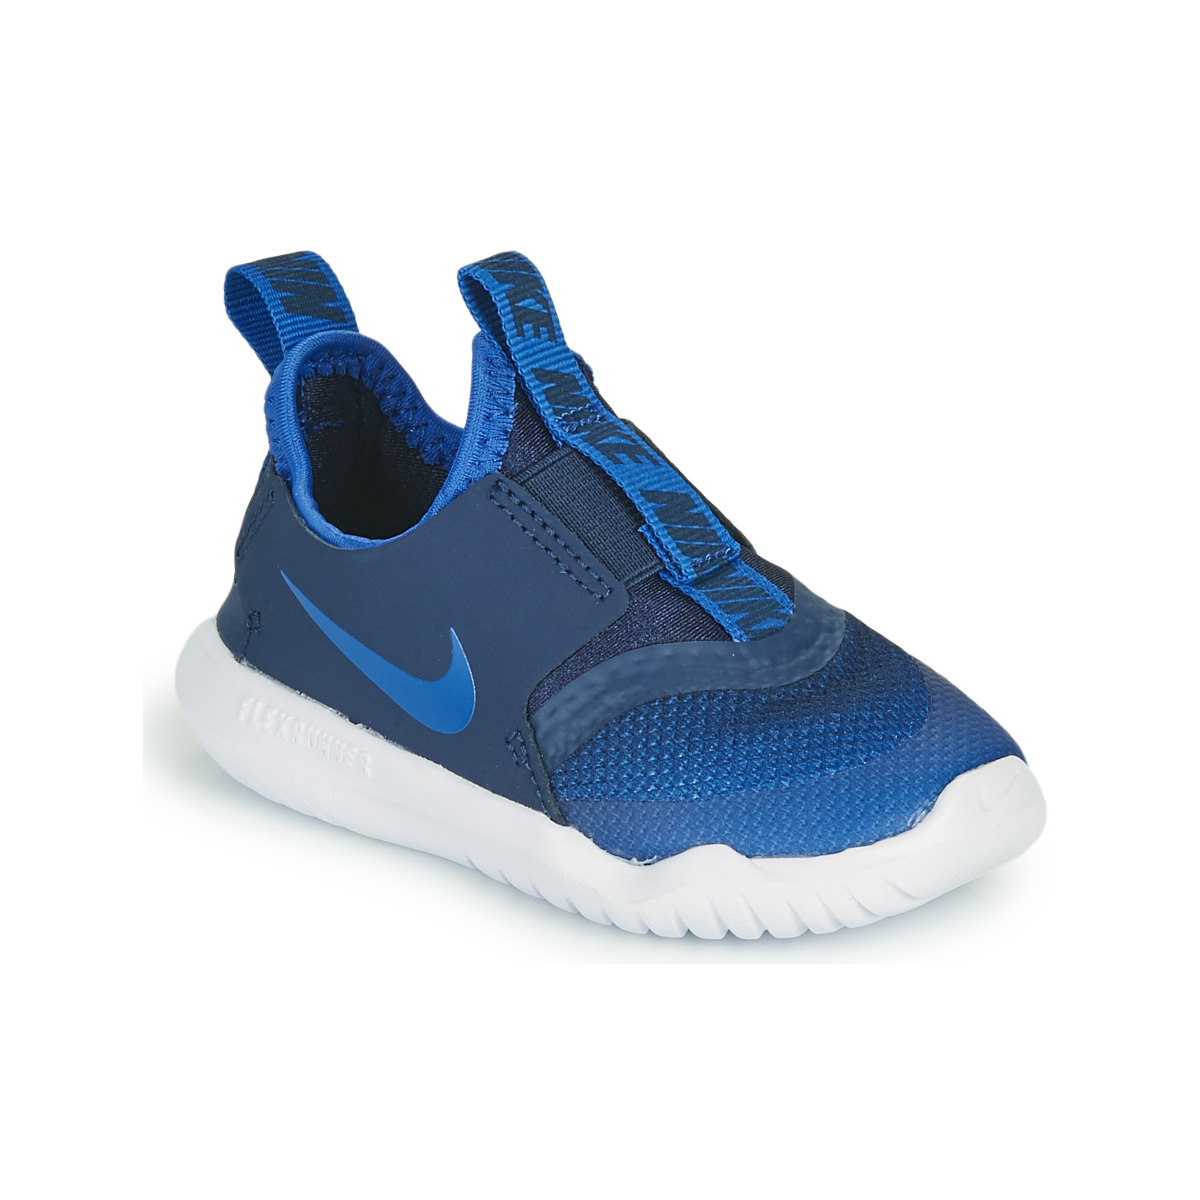 Spartoo.de ! € - Kind Multisportschuhe Blau FLEX TD - Kostenloser Nike RUNNER Schuhe 17,39 | Versand